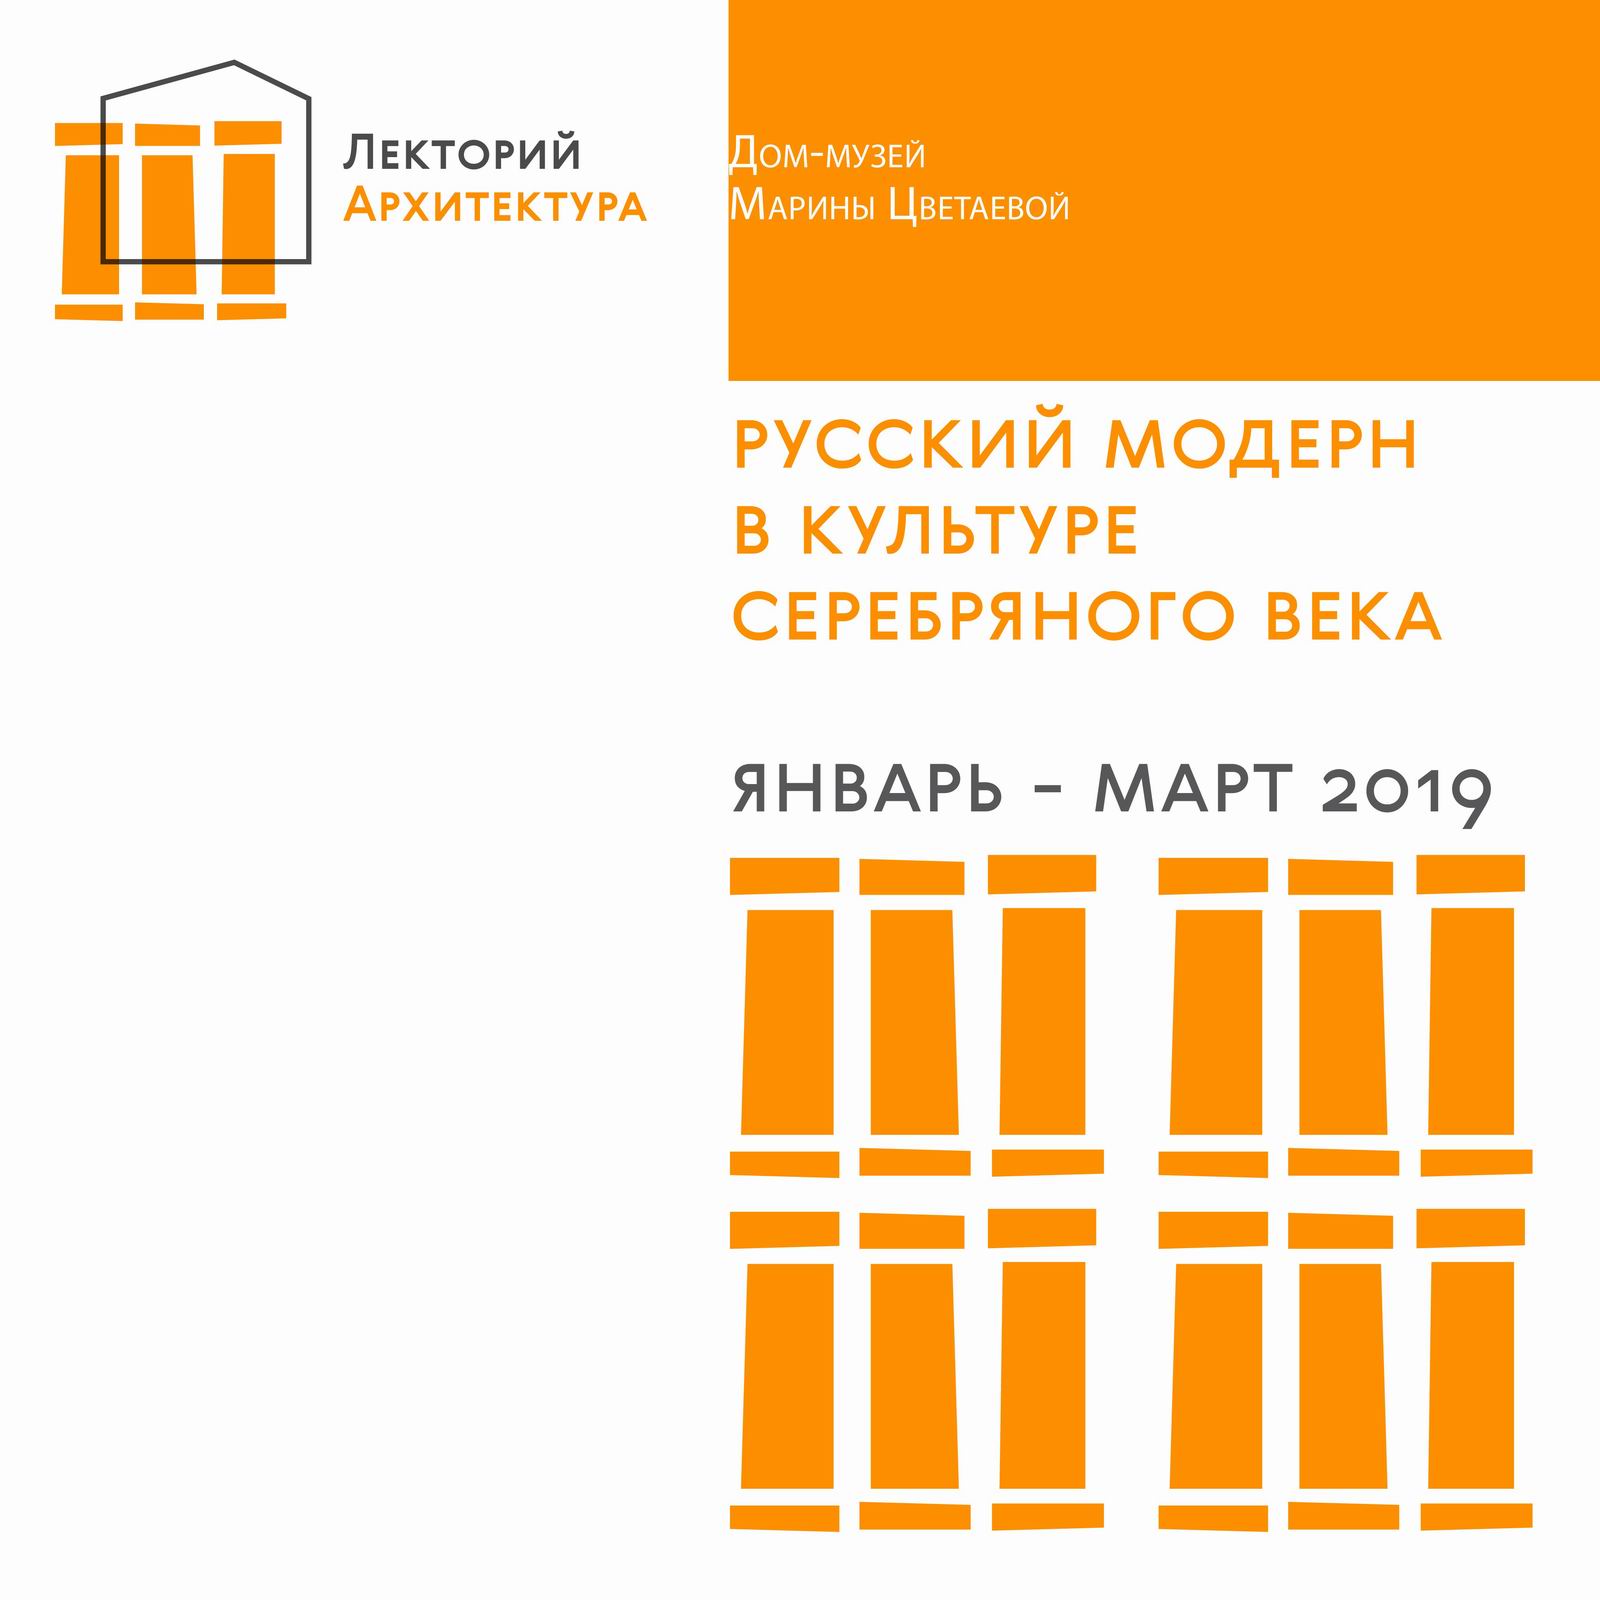 Иллюстрация: Лекторий Дома: Архитектура мирового модерна, его особенности и характеристики, влияние на русскую культуру